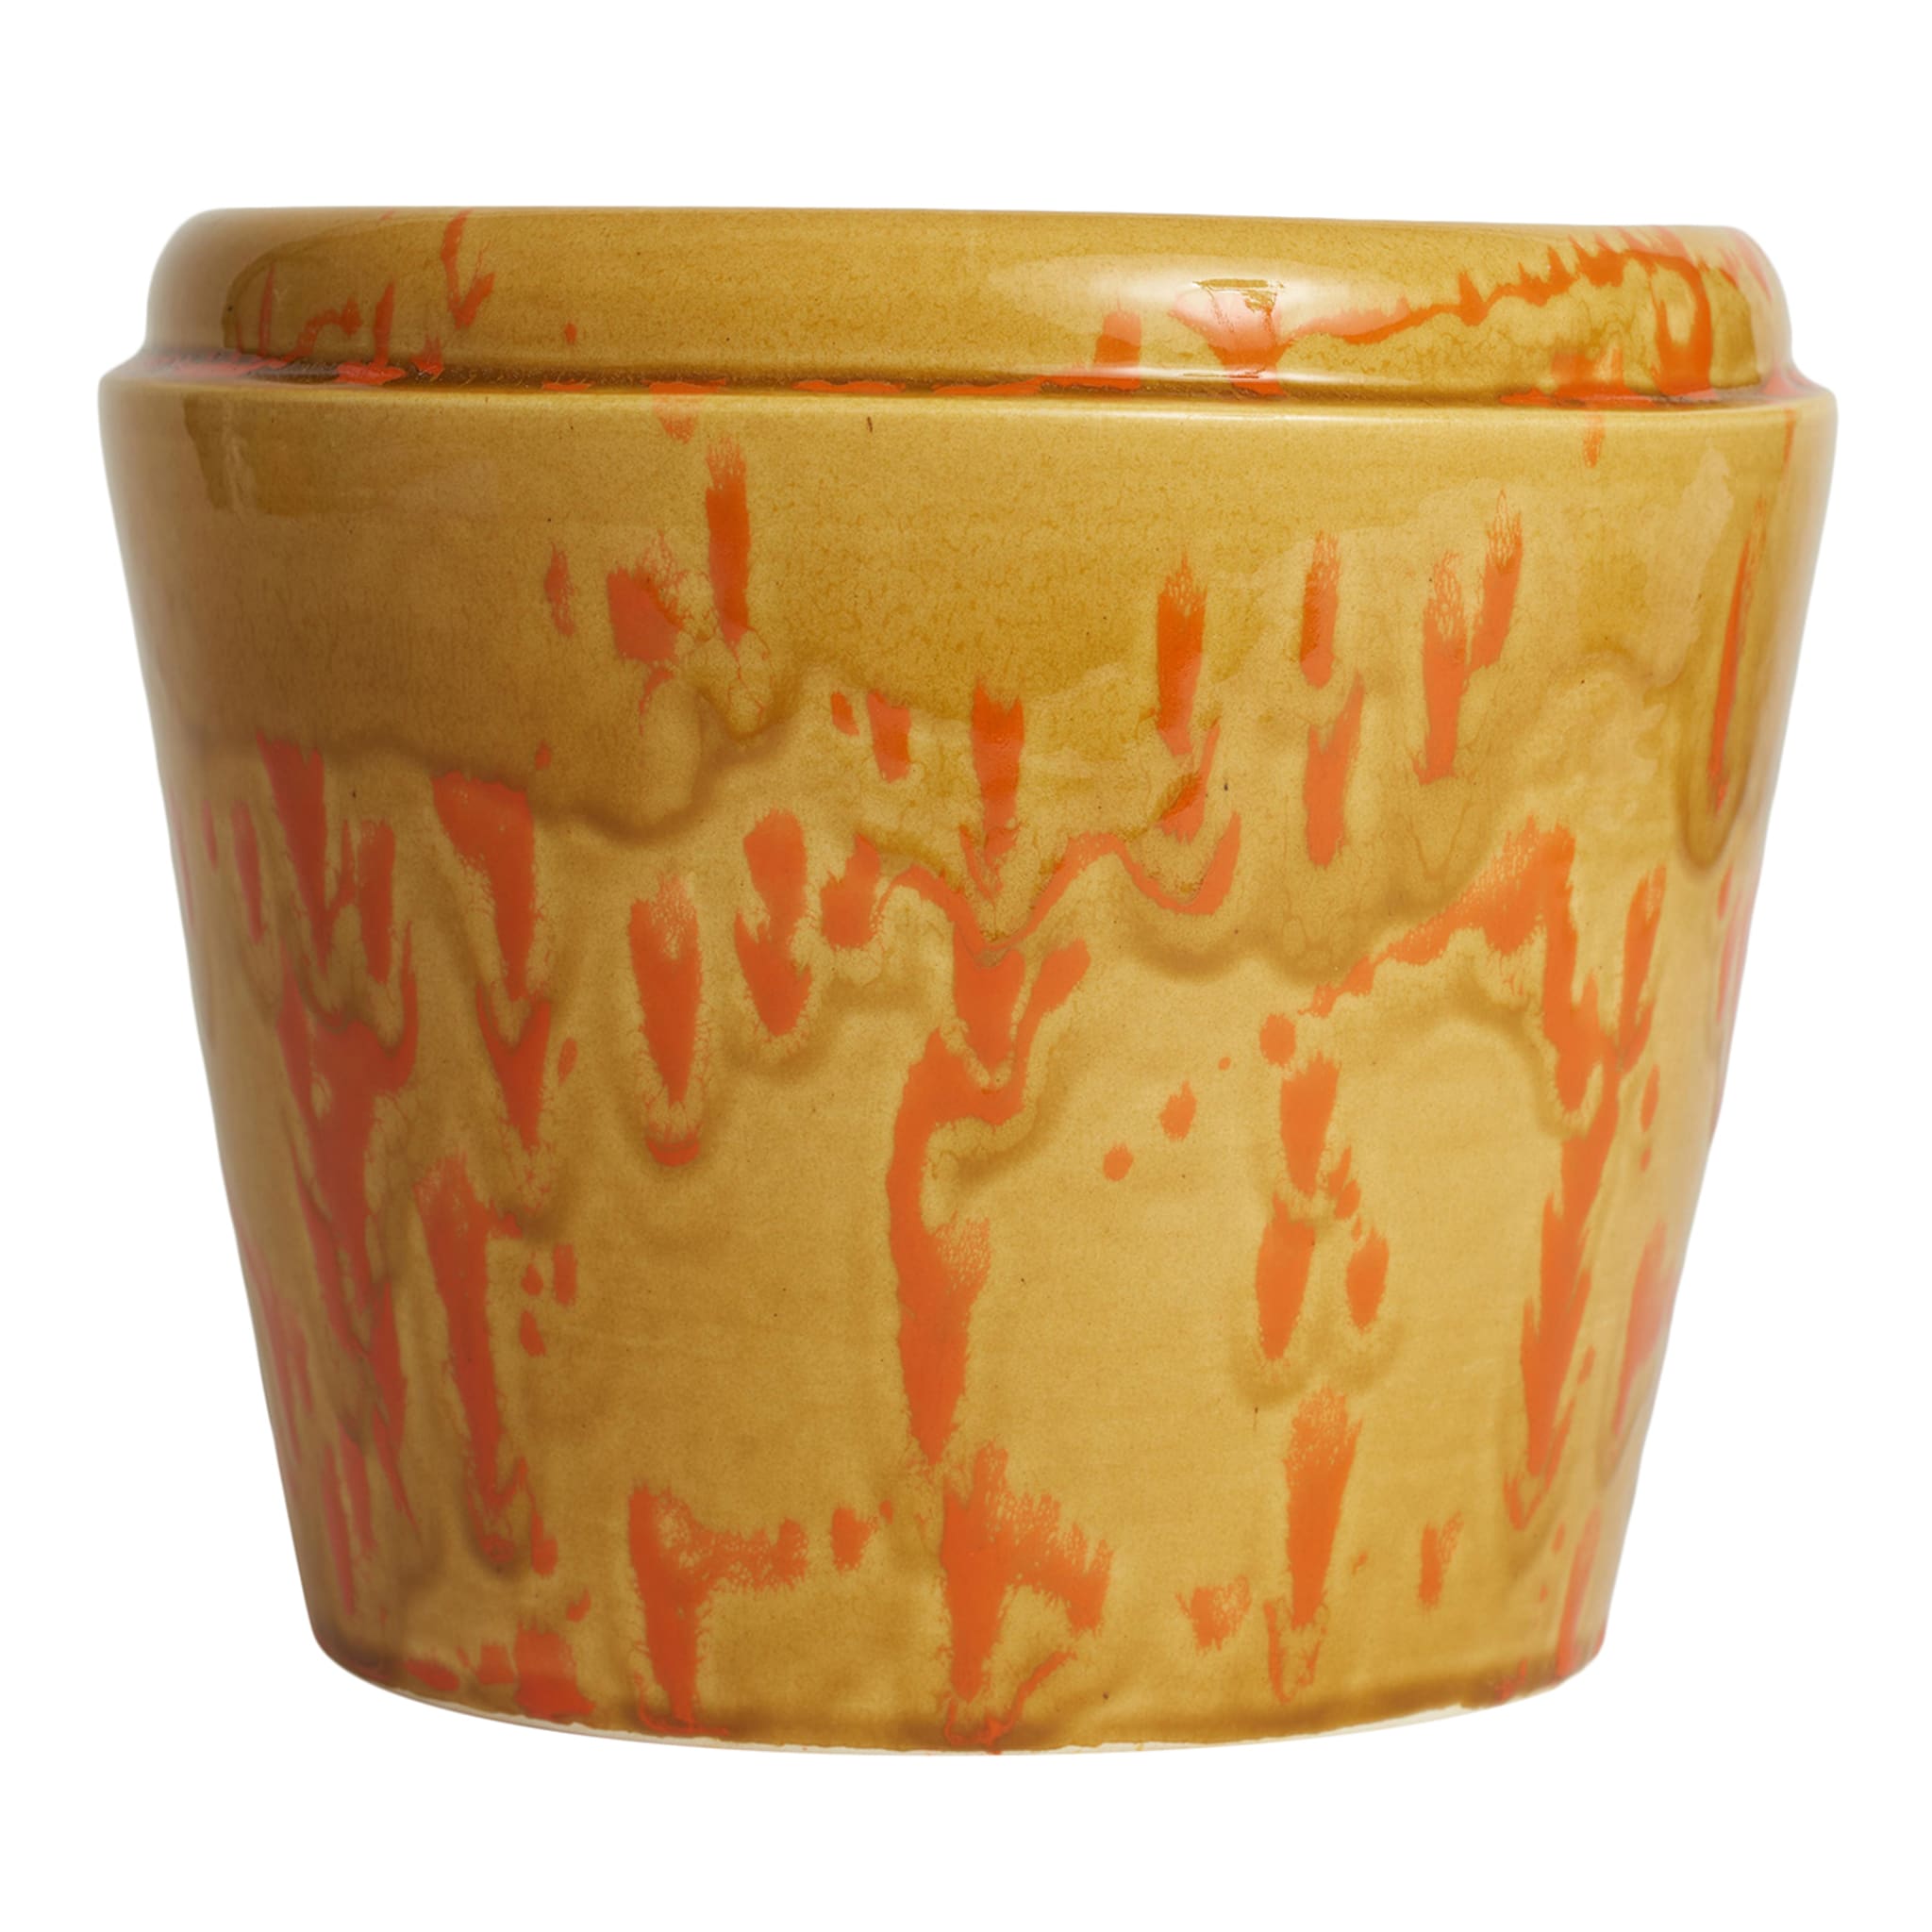 Caramel and Orange Ceramic Cachepot Vase - Main view